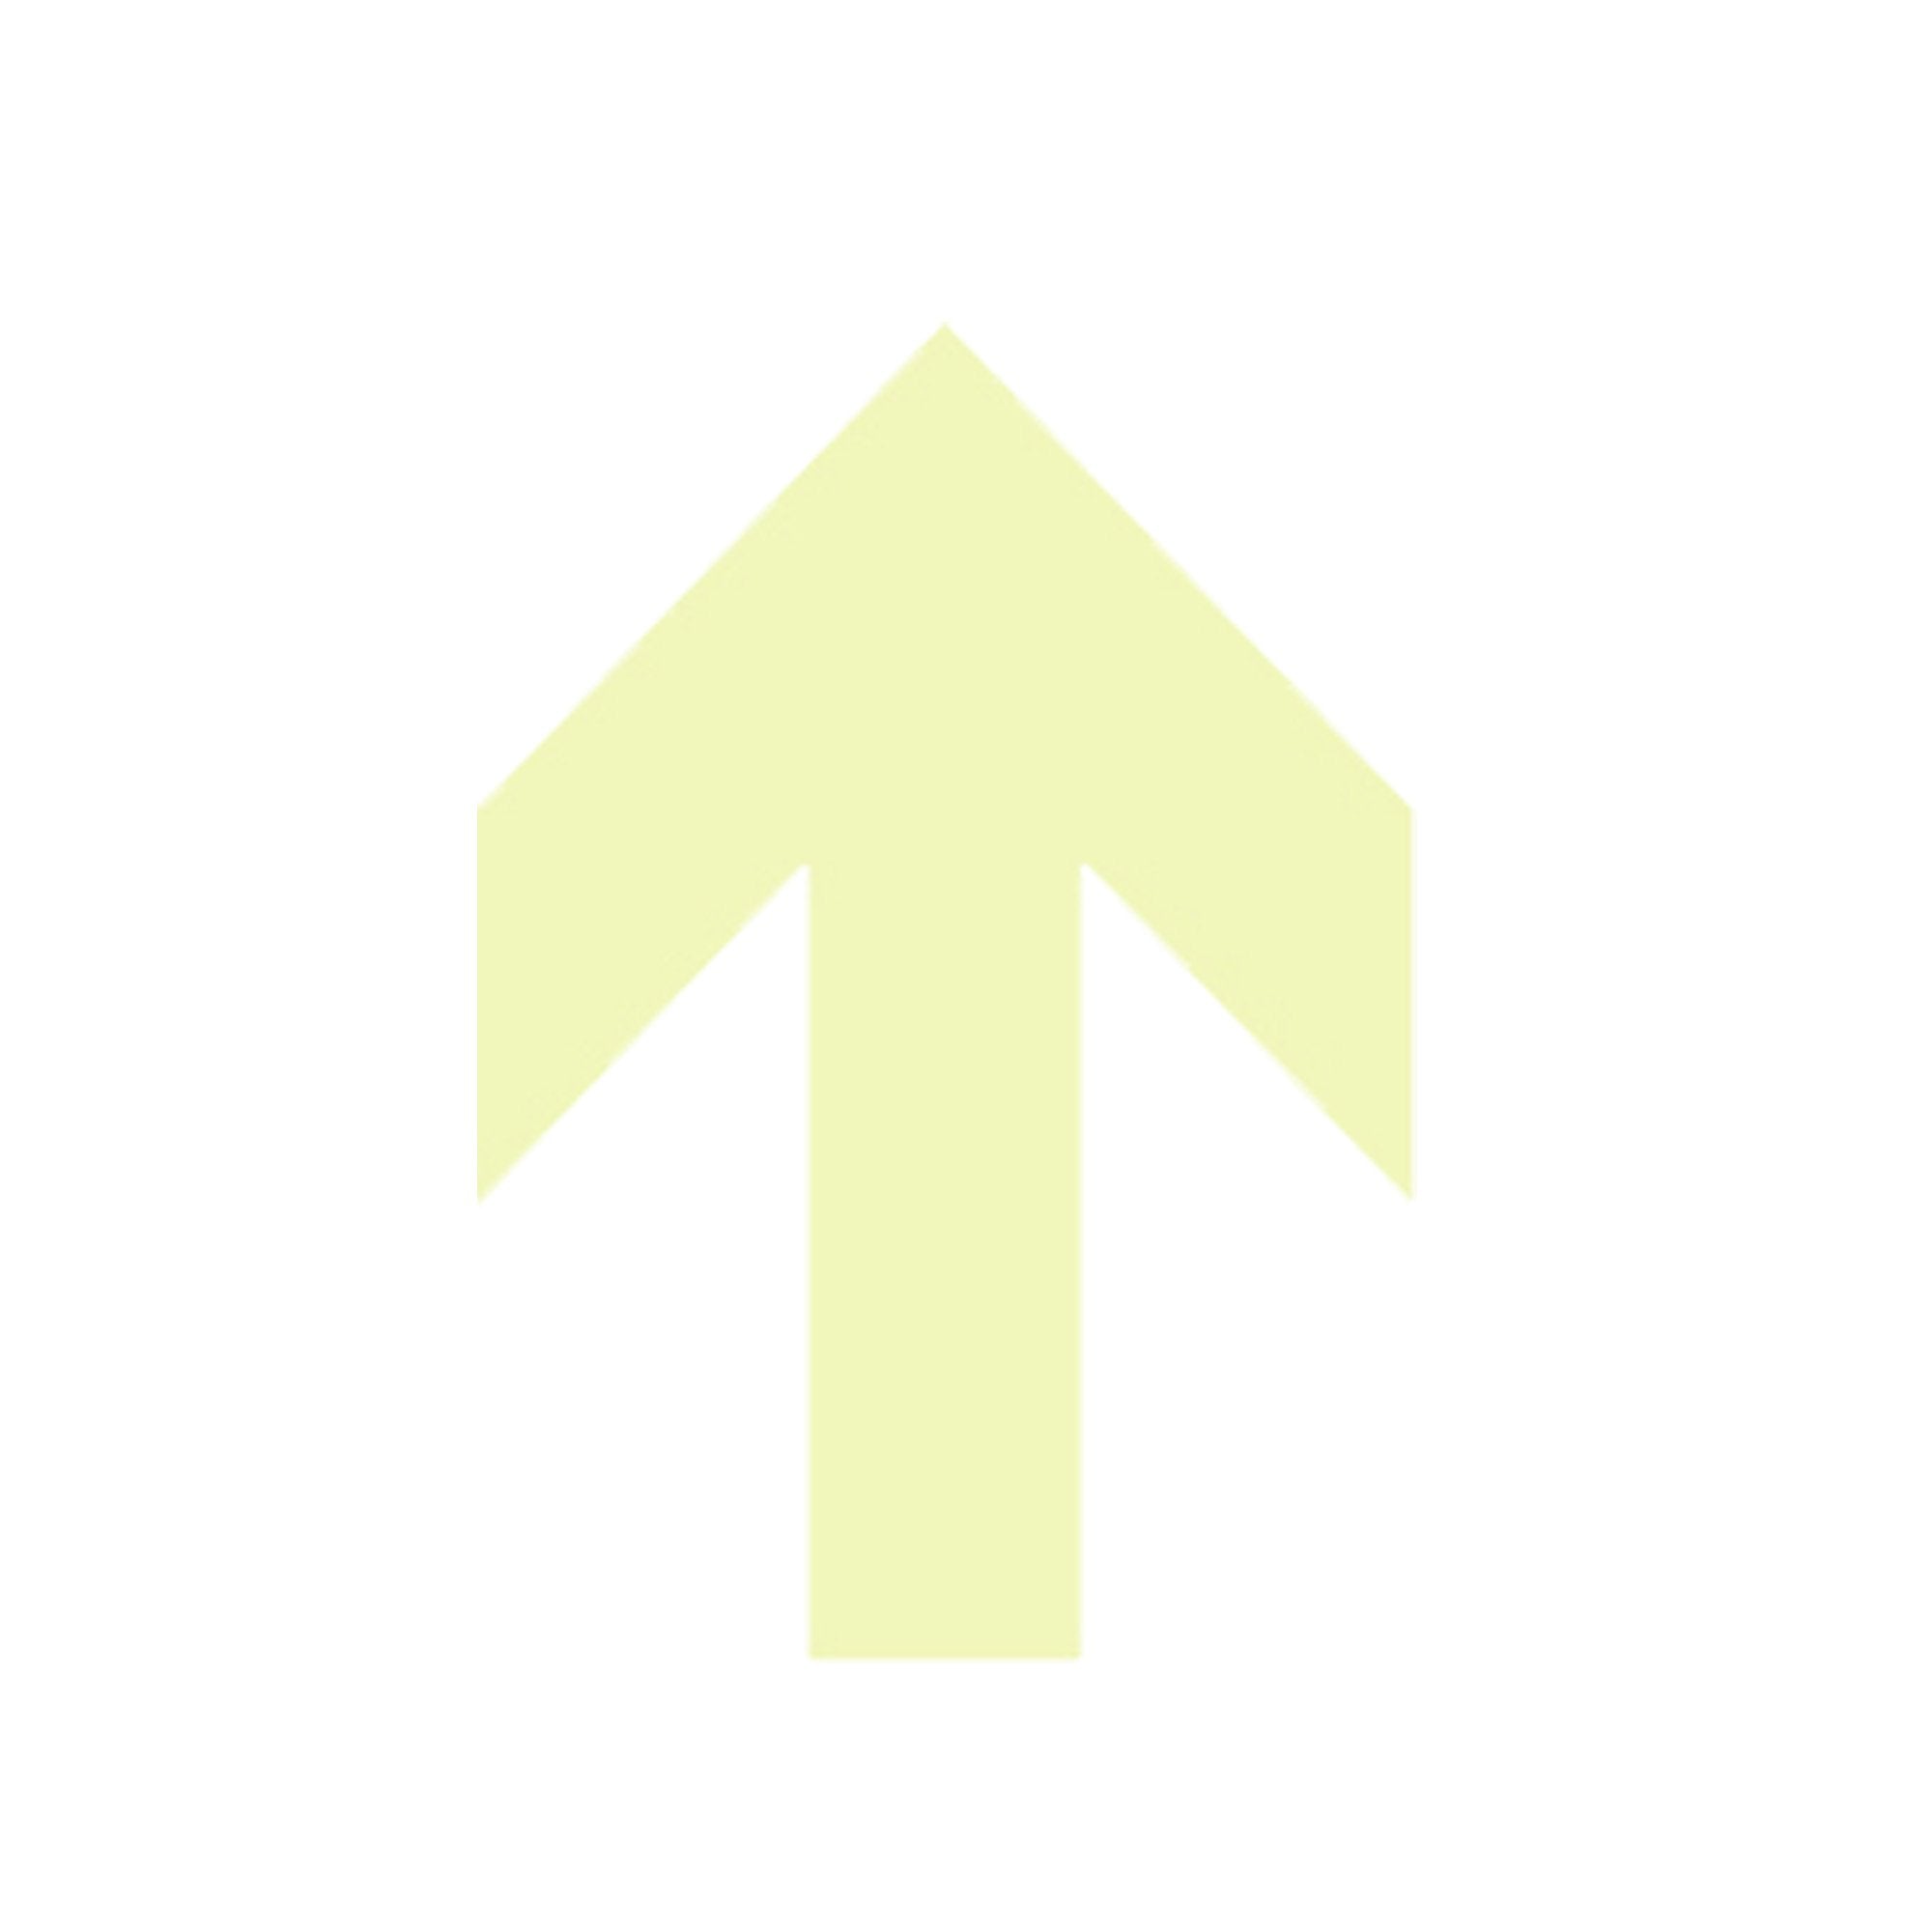 cartelli-segnalatori-freccia-punta-fotoluminescente-adesiva-132x189mm-colore-giallo